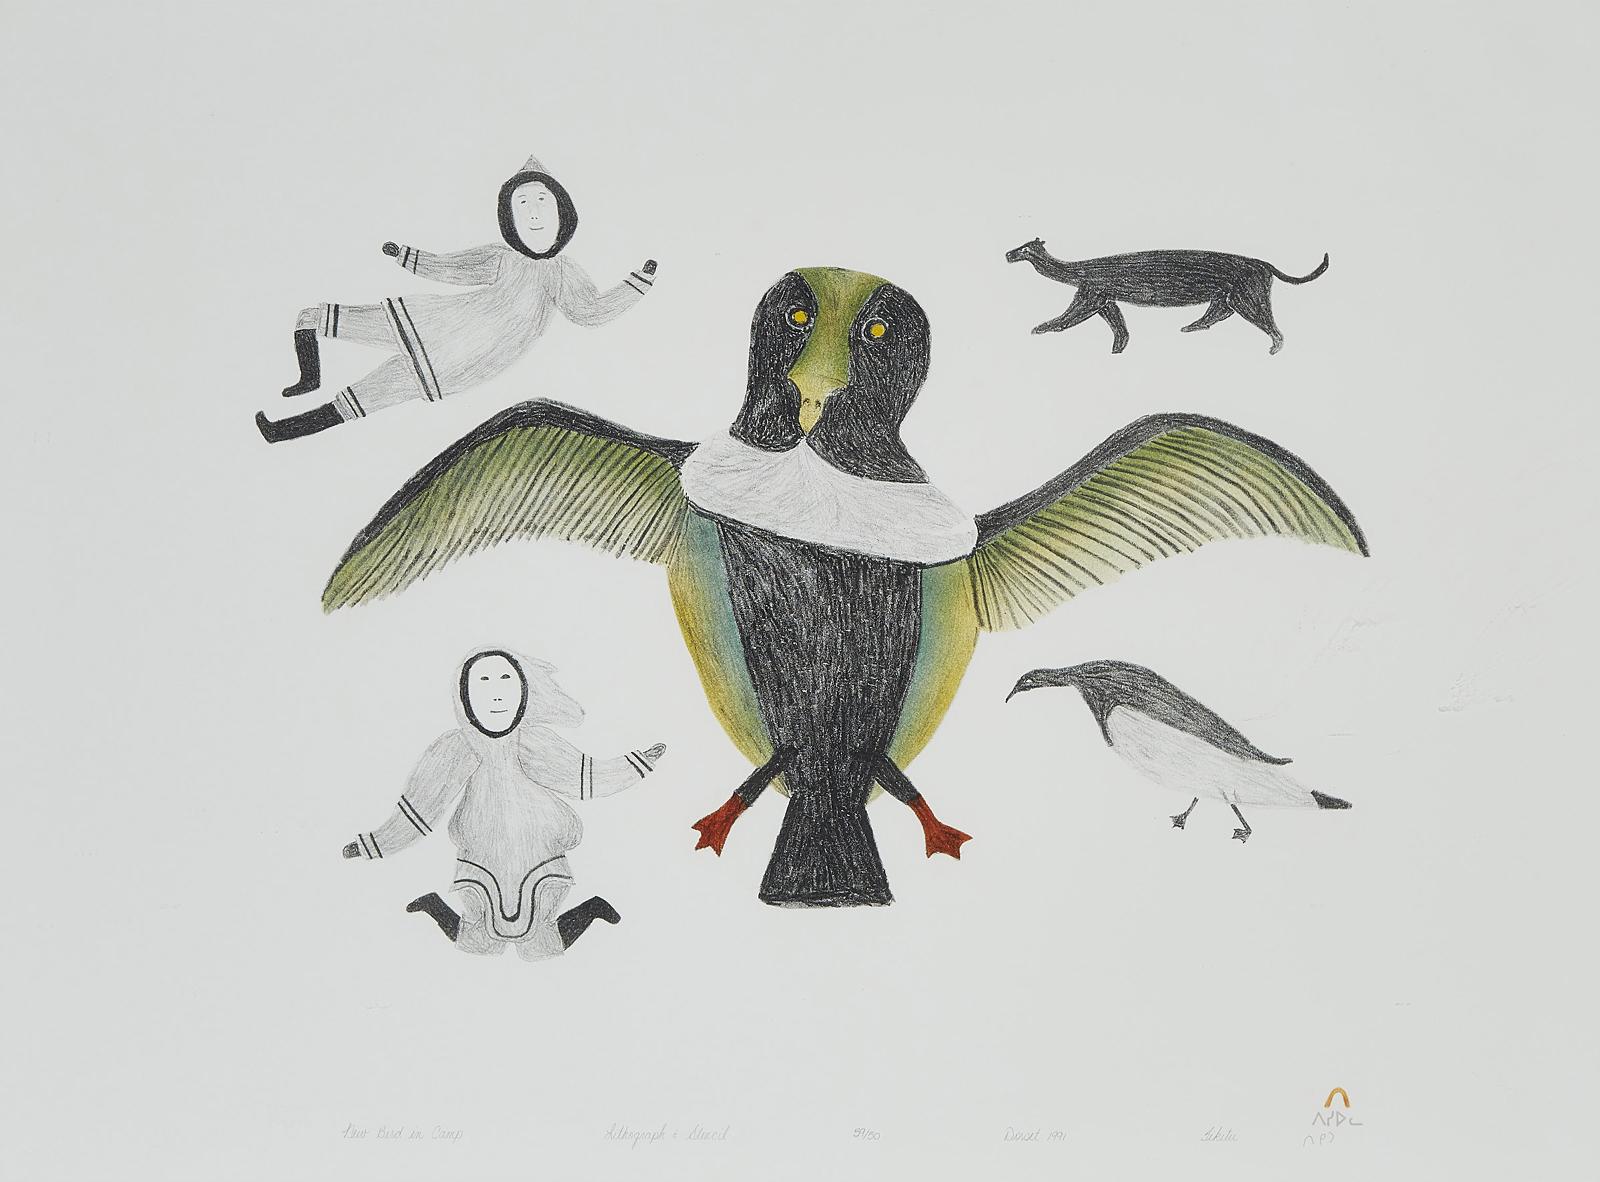 Tikituk Quppapik (1908) - New Bird In Camp